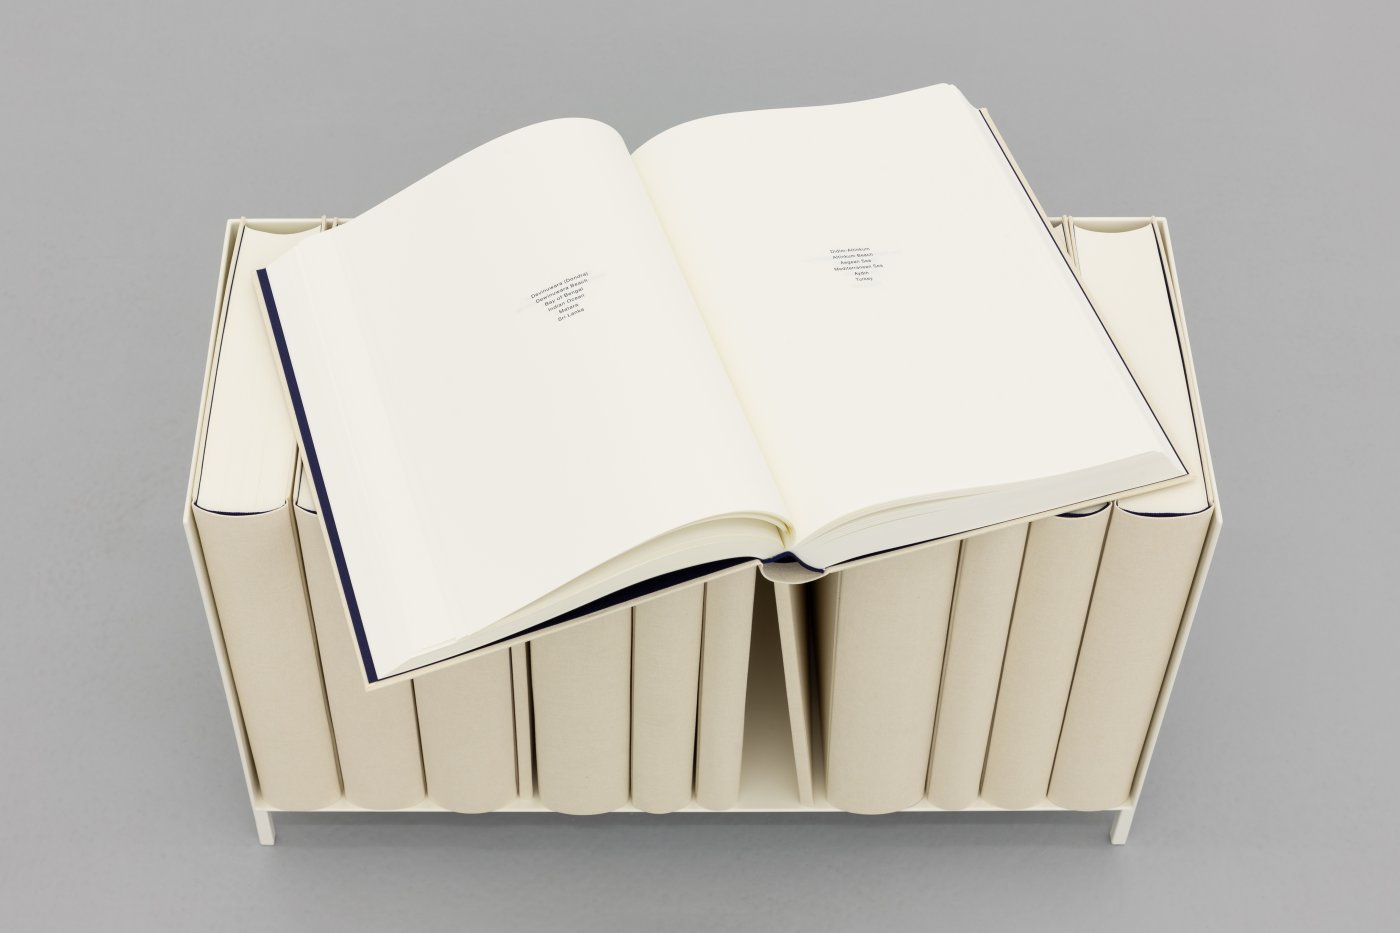 Daniel Gustav Cramer, Sand, 2021 (detail). Shelf, table, 14 books. 103 × 91 × 32.5 cm
